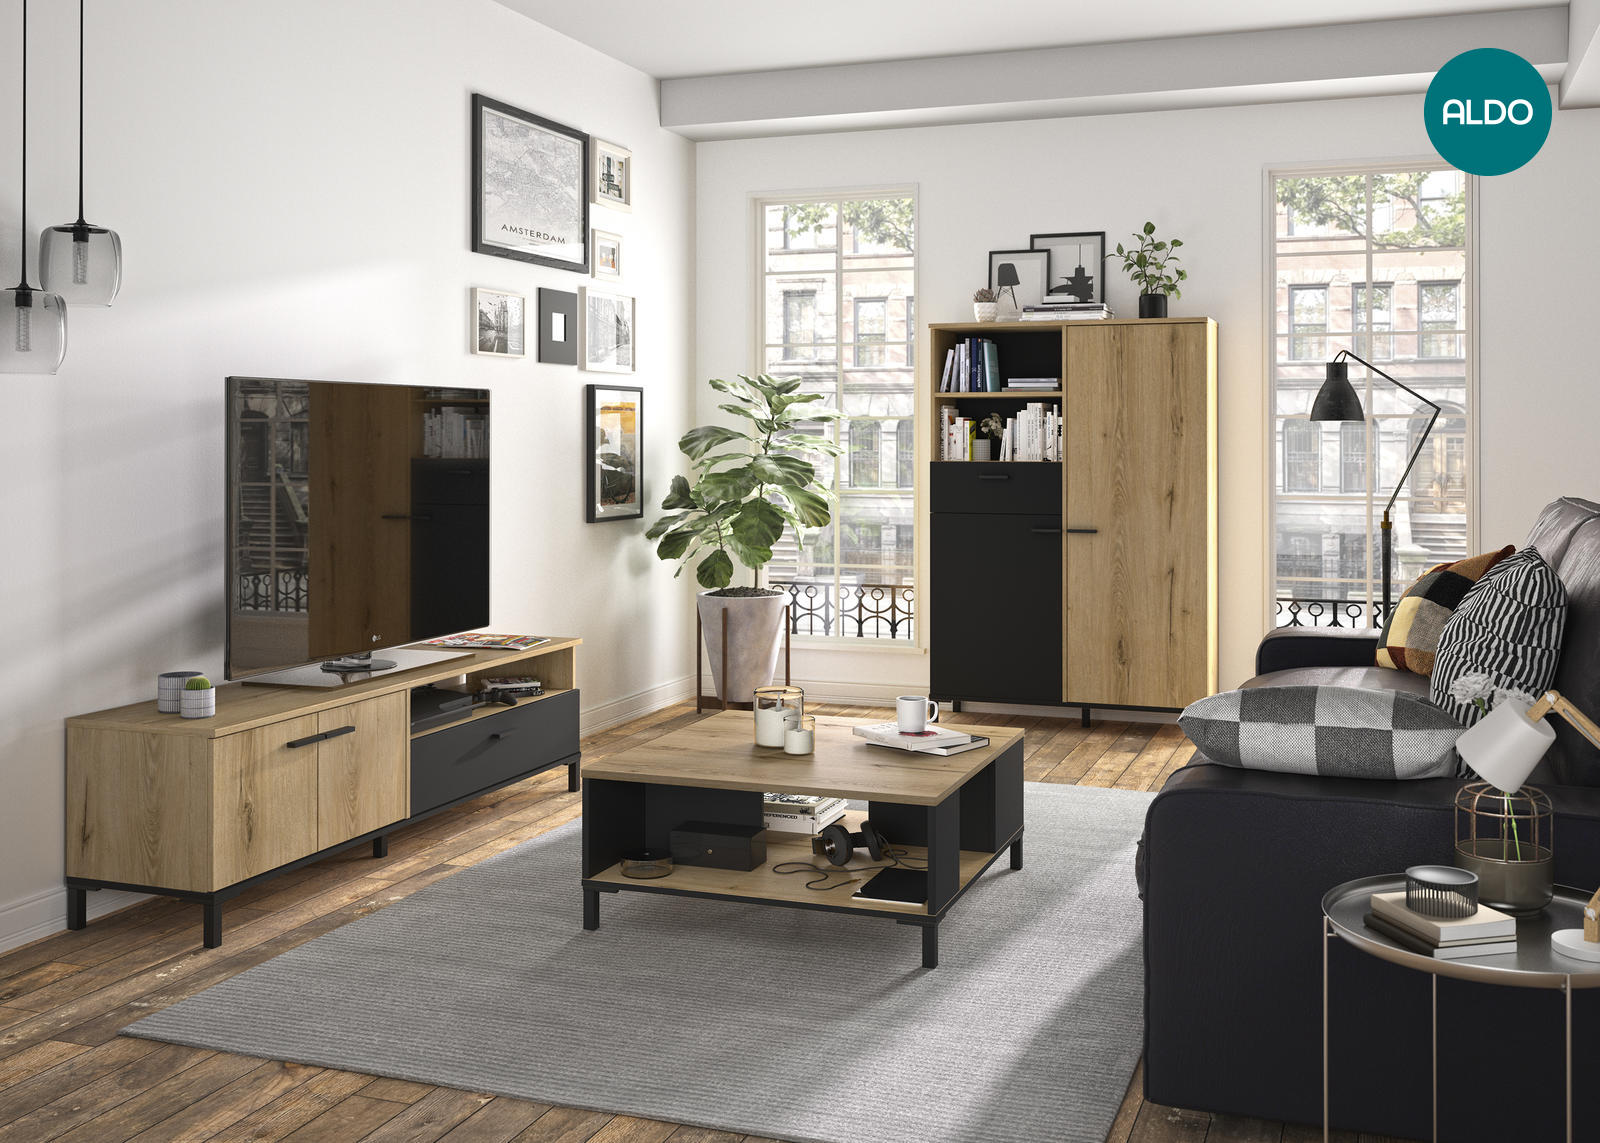 Designový nábytek pro vybavení obývacího pokoje - kolekce Trust